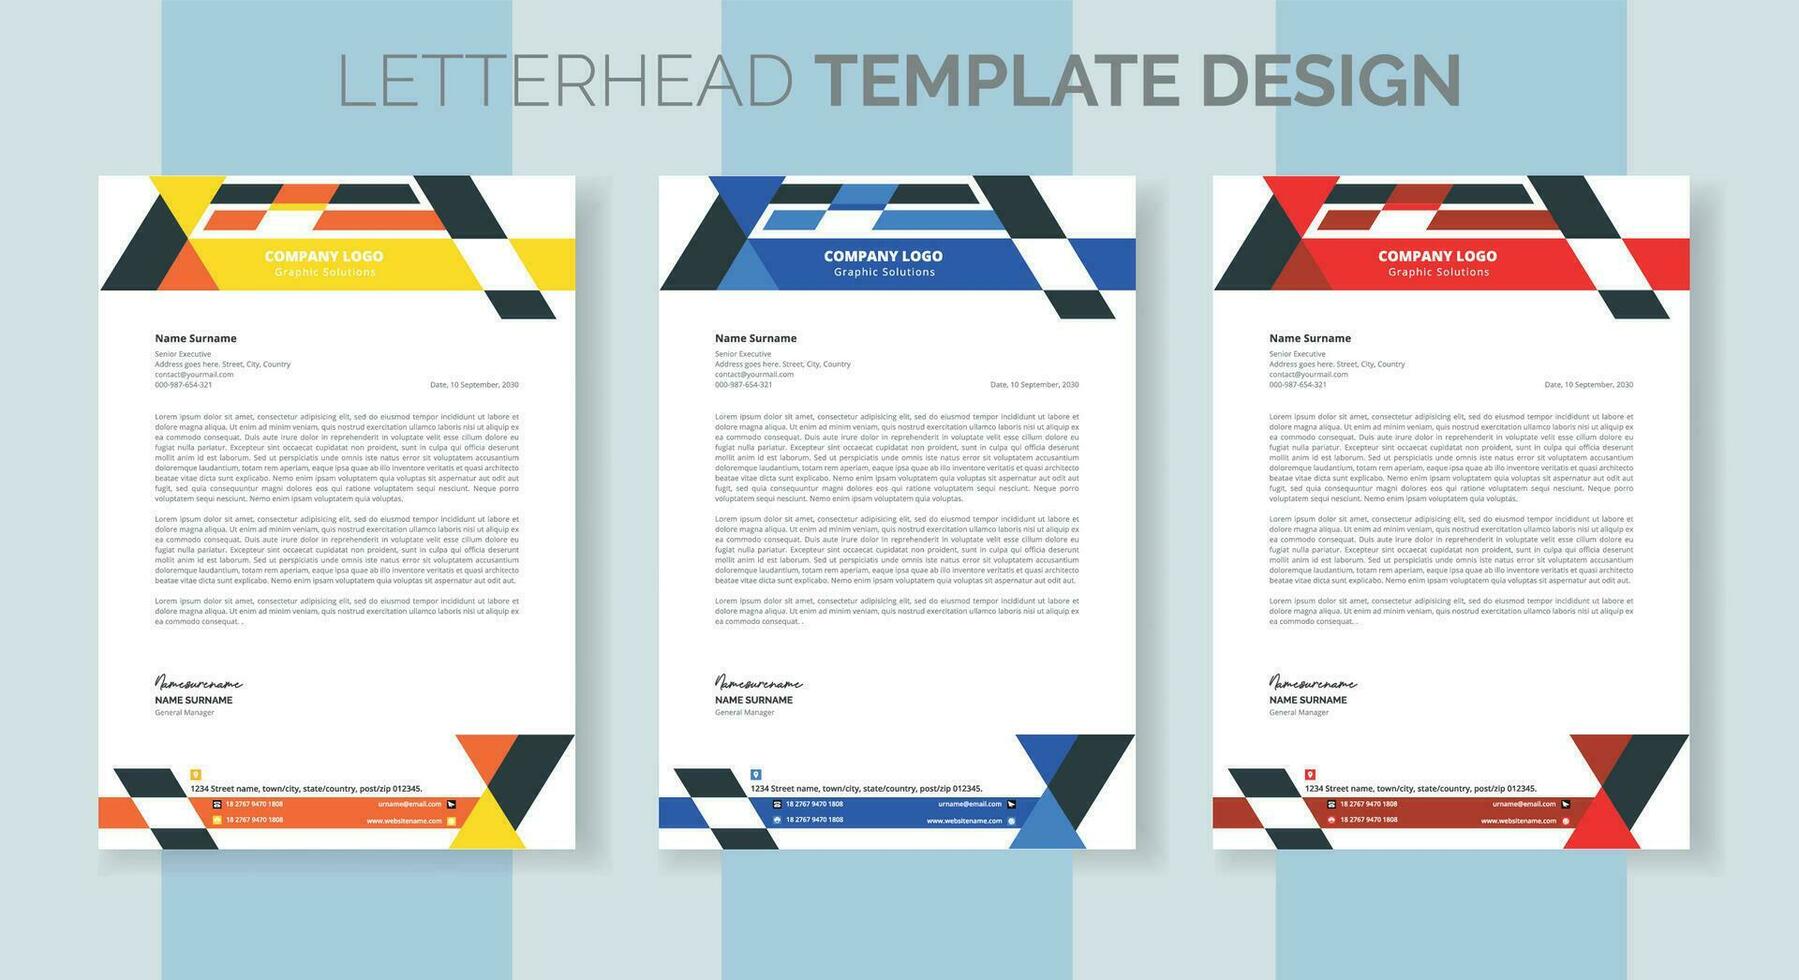 företags- modern företag brev design mall. kreativ modern brev design mall för din projekt. brev huvud, brevpapper, företag brev design vektor